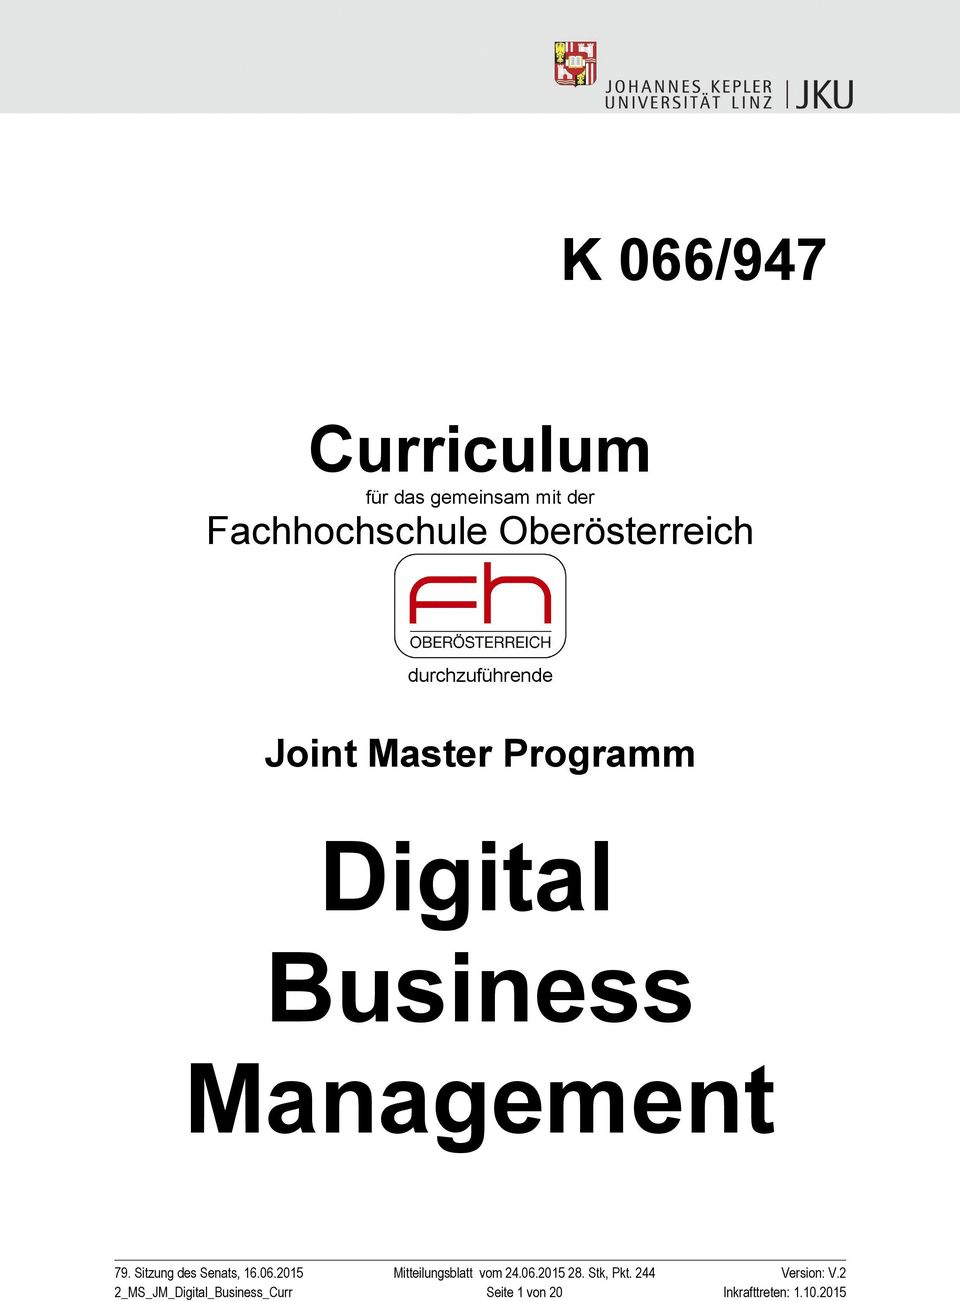 Master Programm Digital Business Management